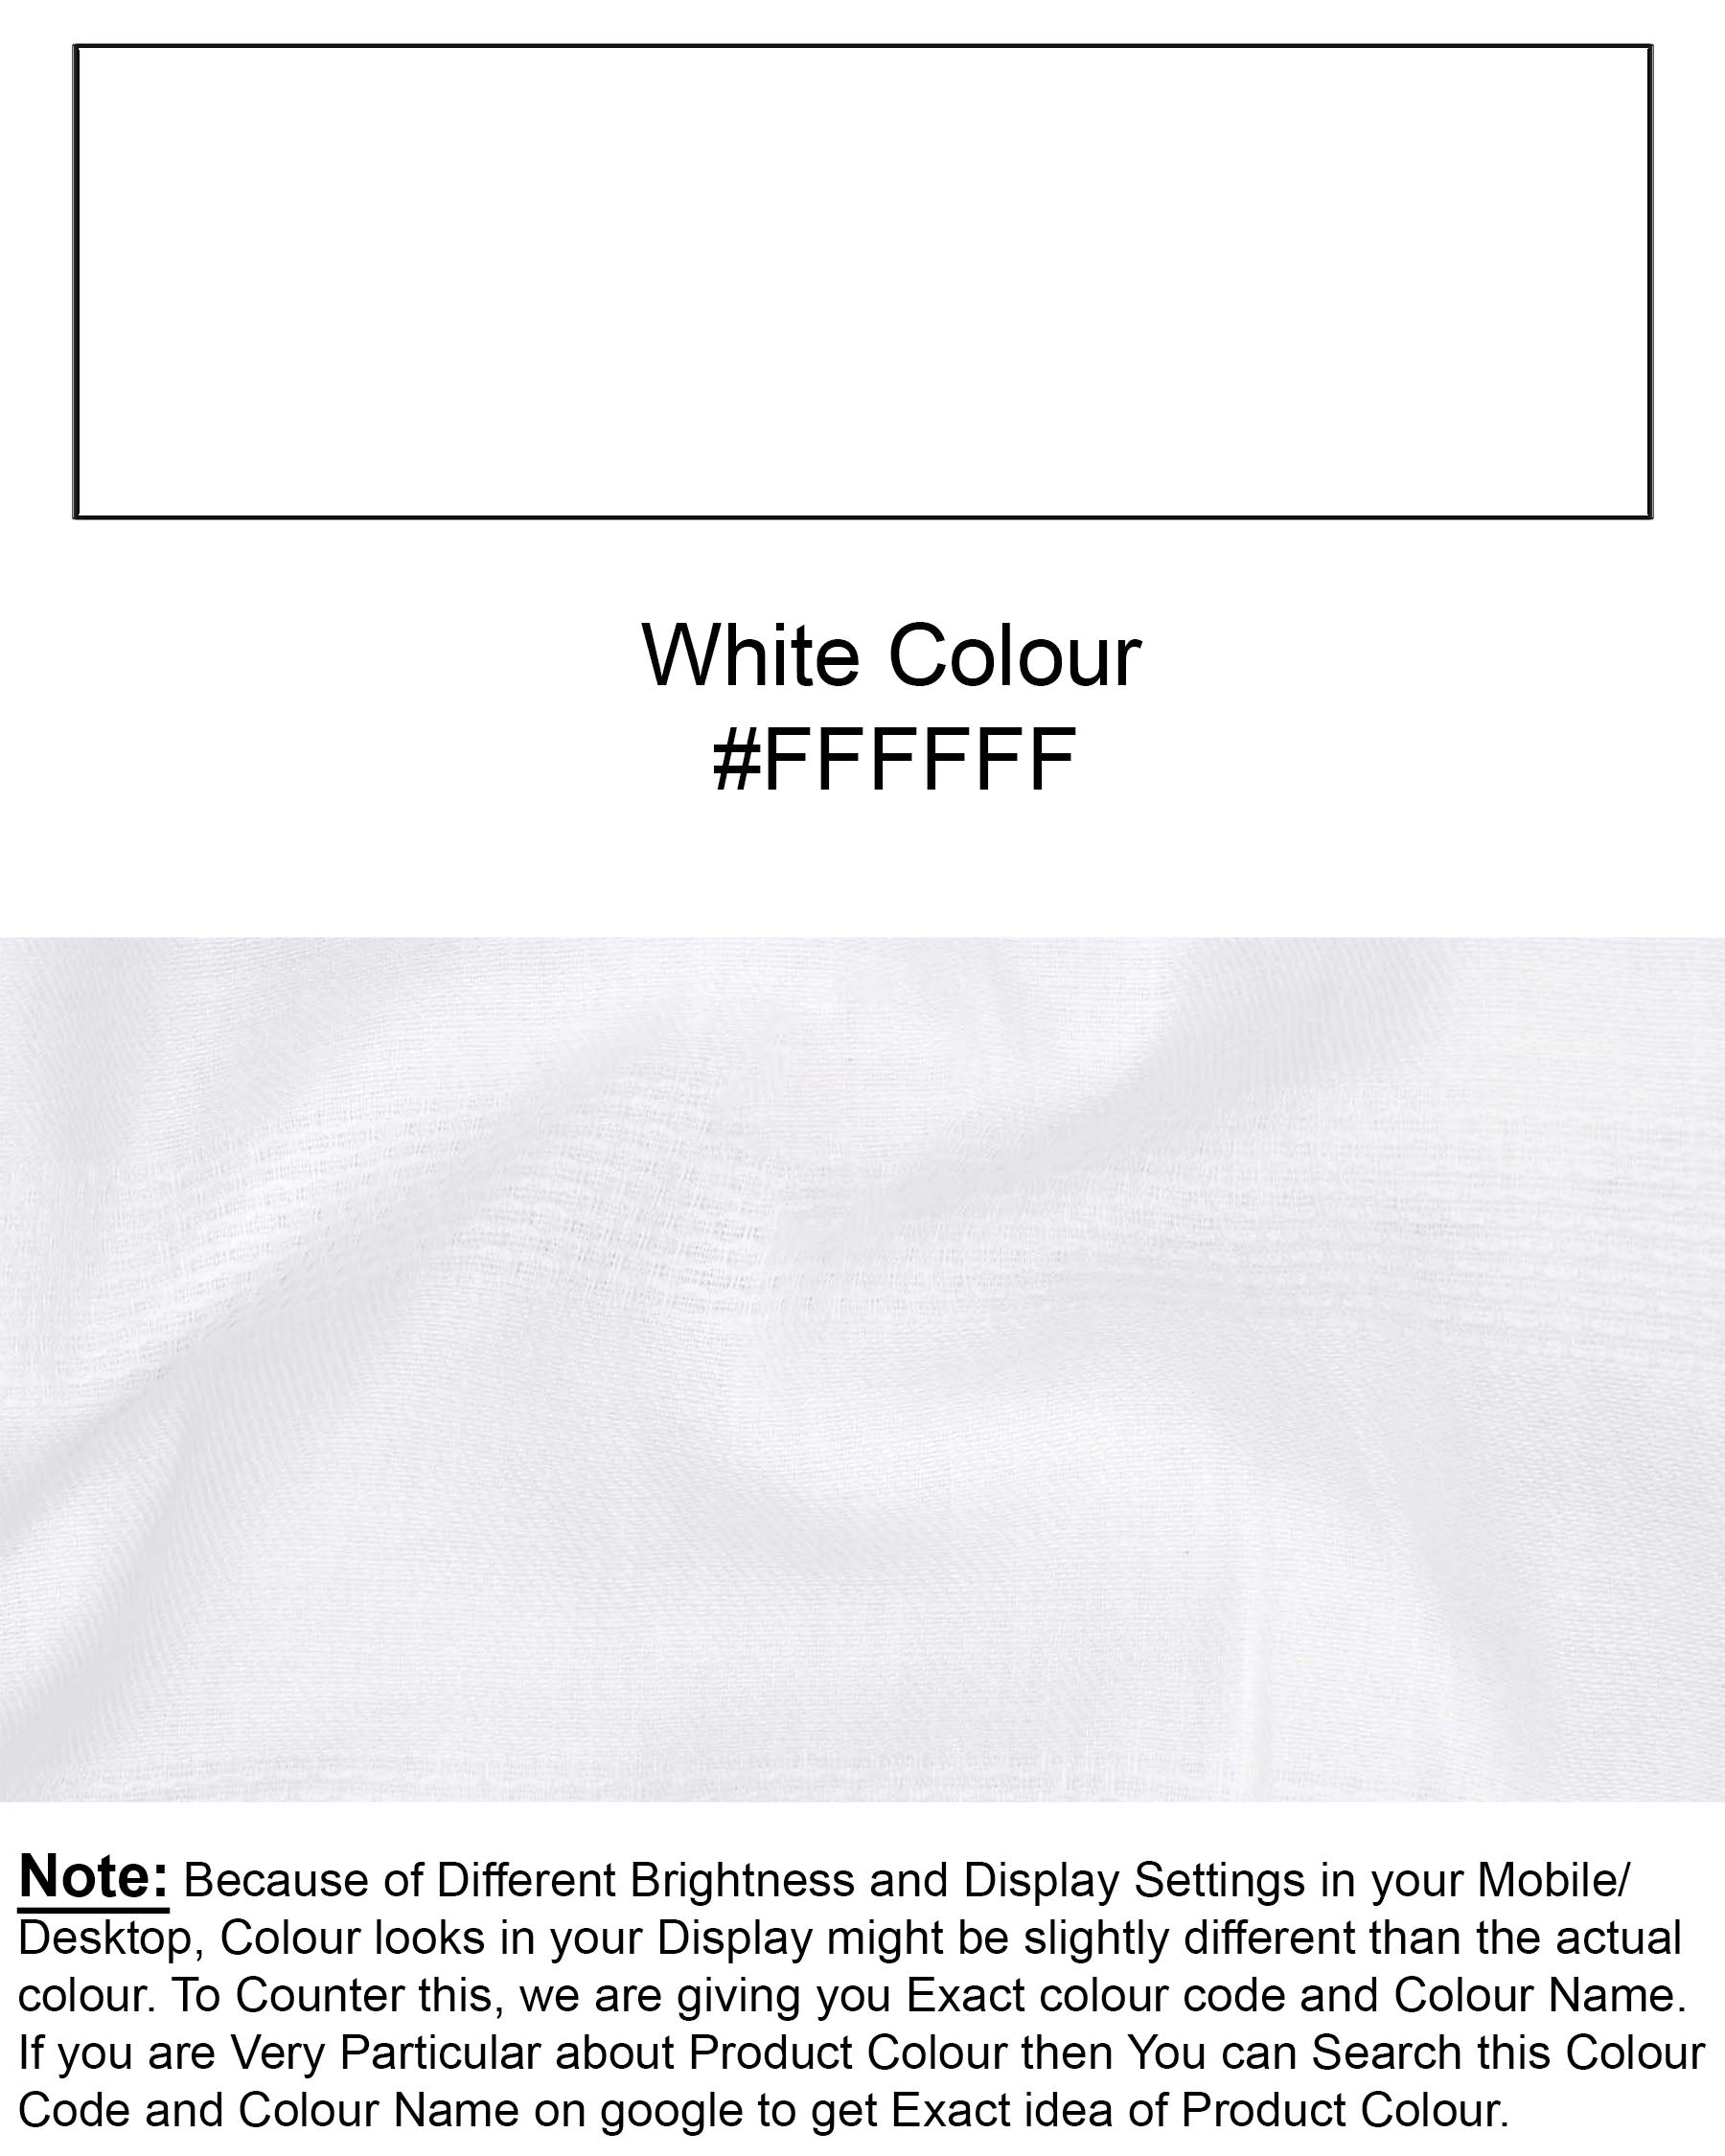 Bright White Dobby Textured Premium Giza Cotton Shirt 6204-CA-38, 6204-CA-H-38, 6204-CA-39, 6204-CA-H-39, 6204-CA-40, 6204-CA-H-40, 6204-CA-42, 6204-CA-H-42, 6204-CA-44, 6204-CA-H-44, 6204-CA-46, 6204-CA-H-46, 6204-CA-48, 6204-CA-H-48, 6204-CA-50, 6204-CA-H-50, 6204-CA-52, 6204-CA-H-52